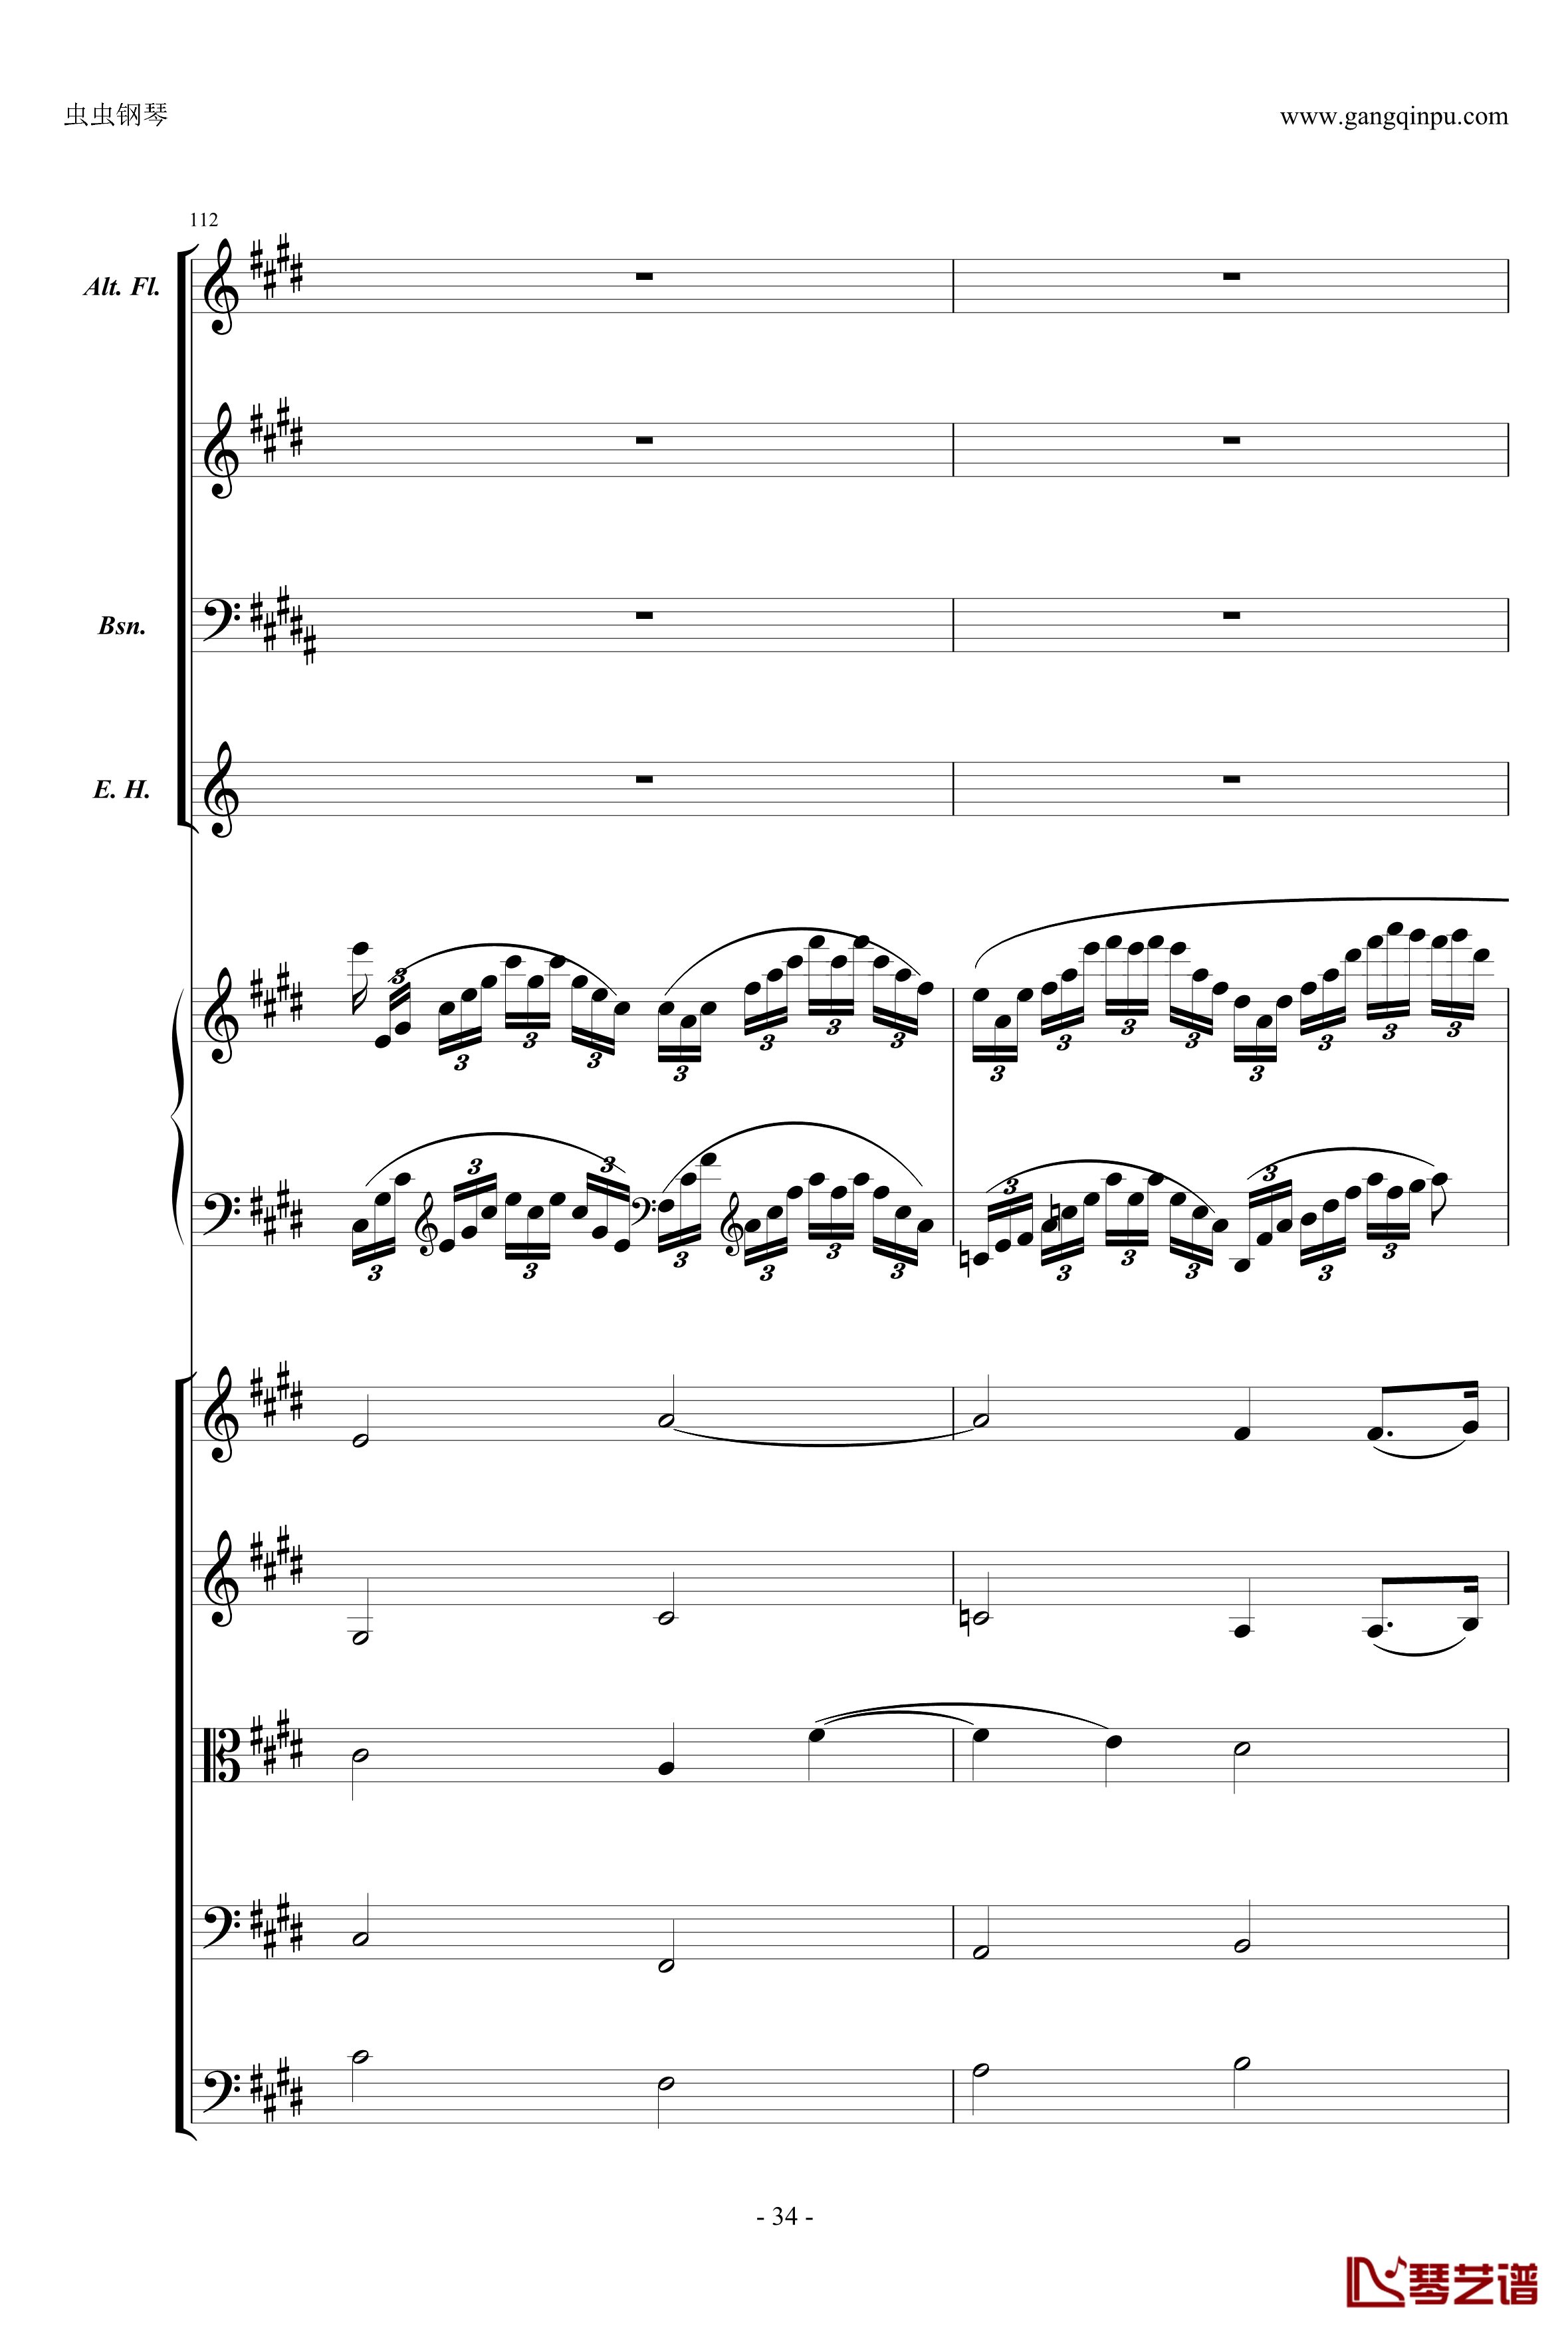 萧邦第一钢琴协奏曲第二乐章钢琴谱-肖邦-chopin34